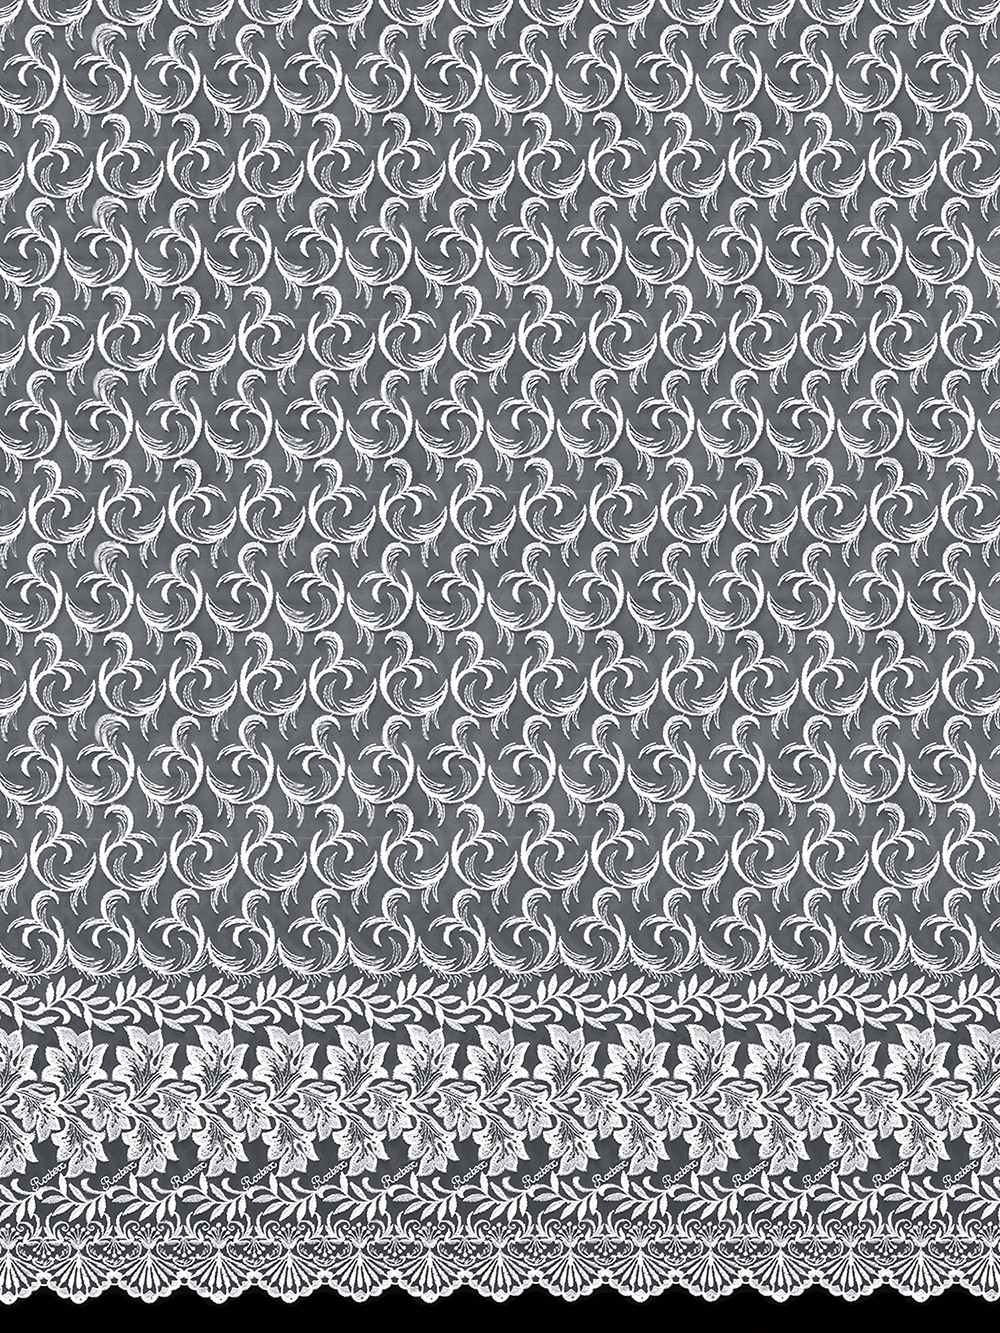 Готовая штора тюль микросетка с рисунком вышивкой 120034-V106.214 (565х270 см) белая